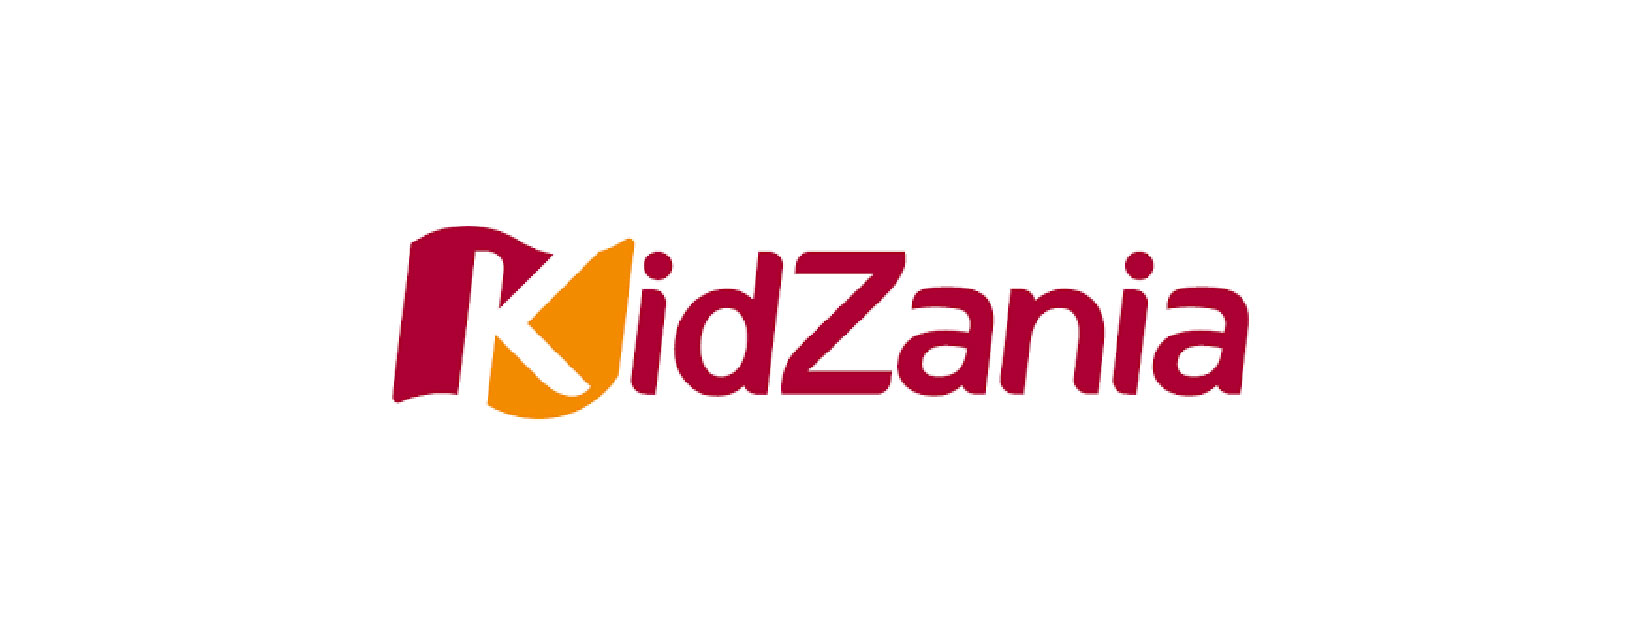 Tourist Attractions  – KidZania